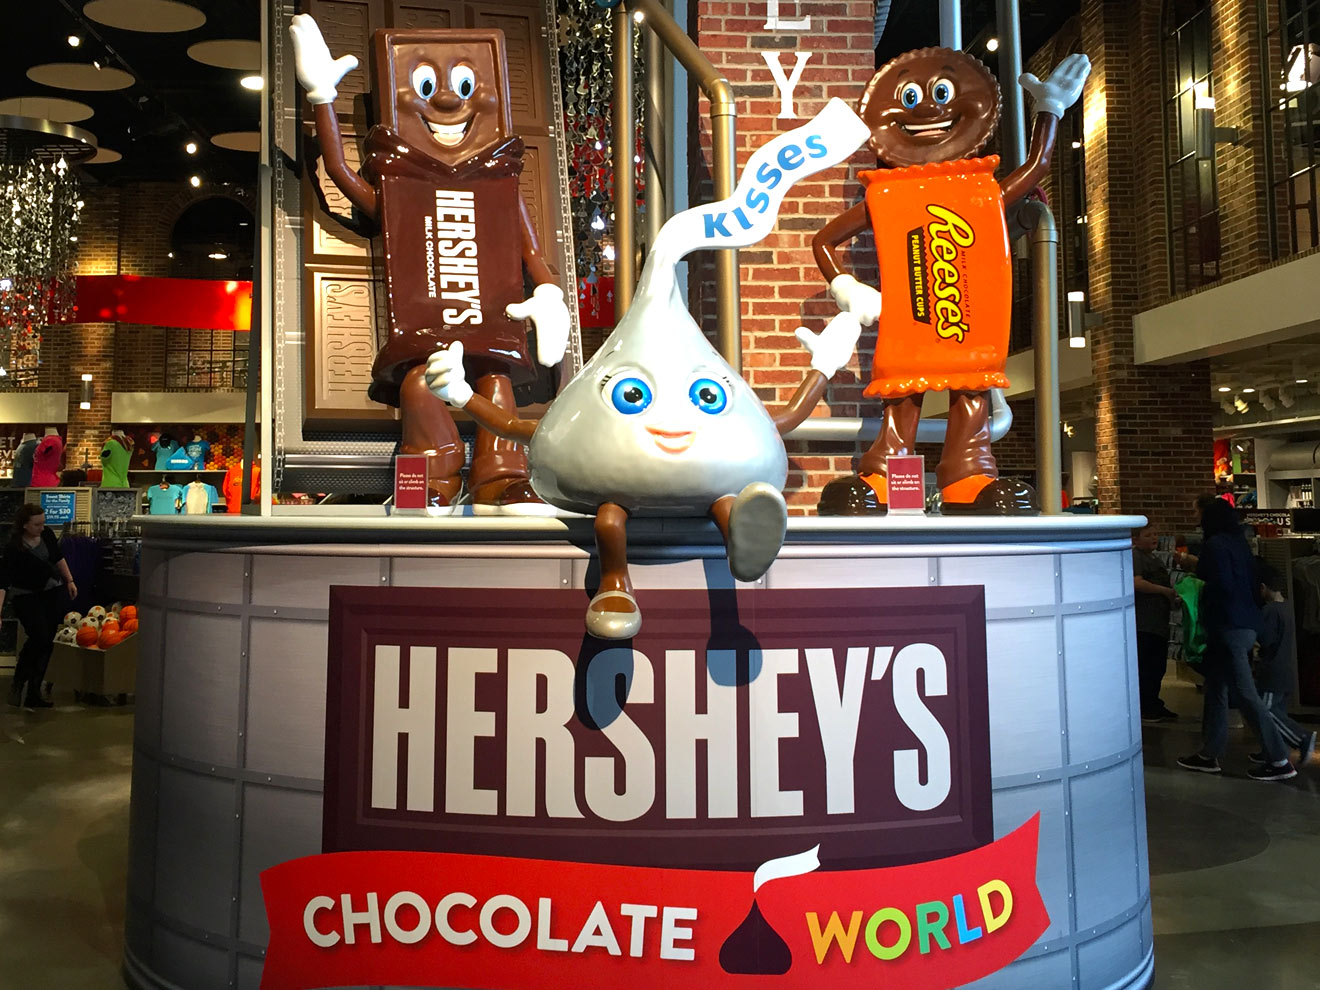 Hersheys Chocolate World Character Display 